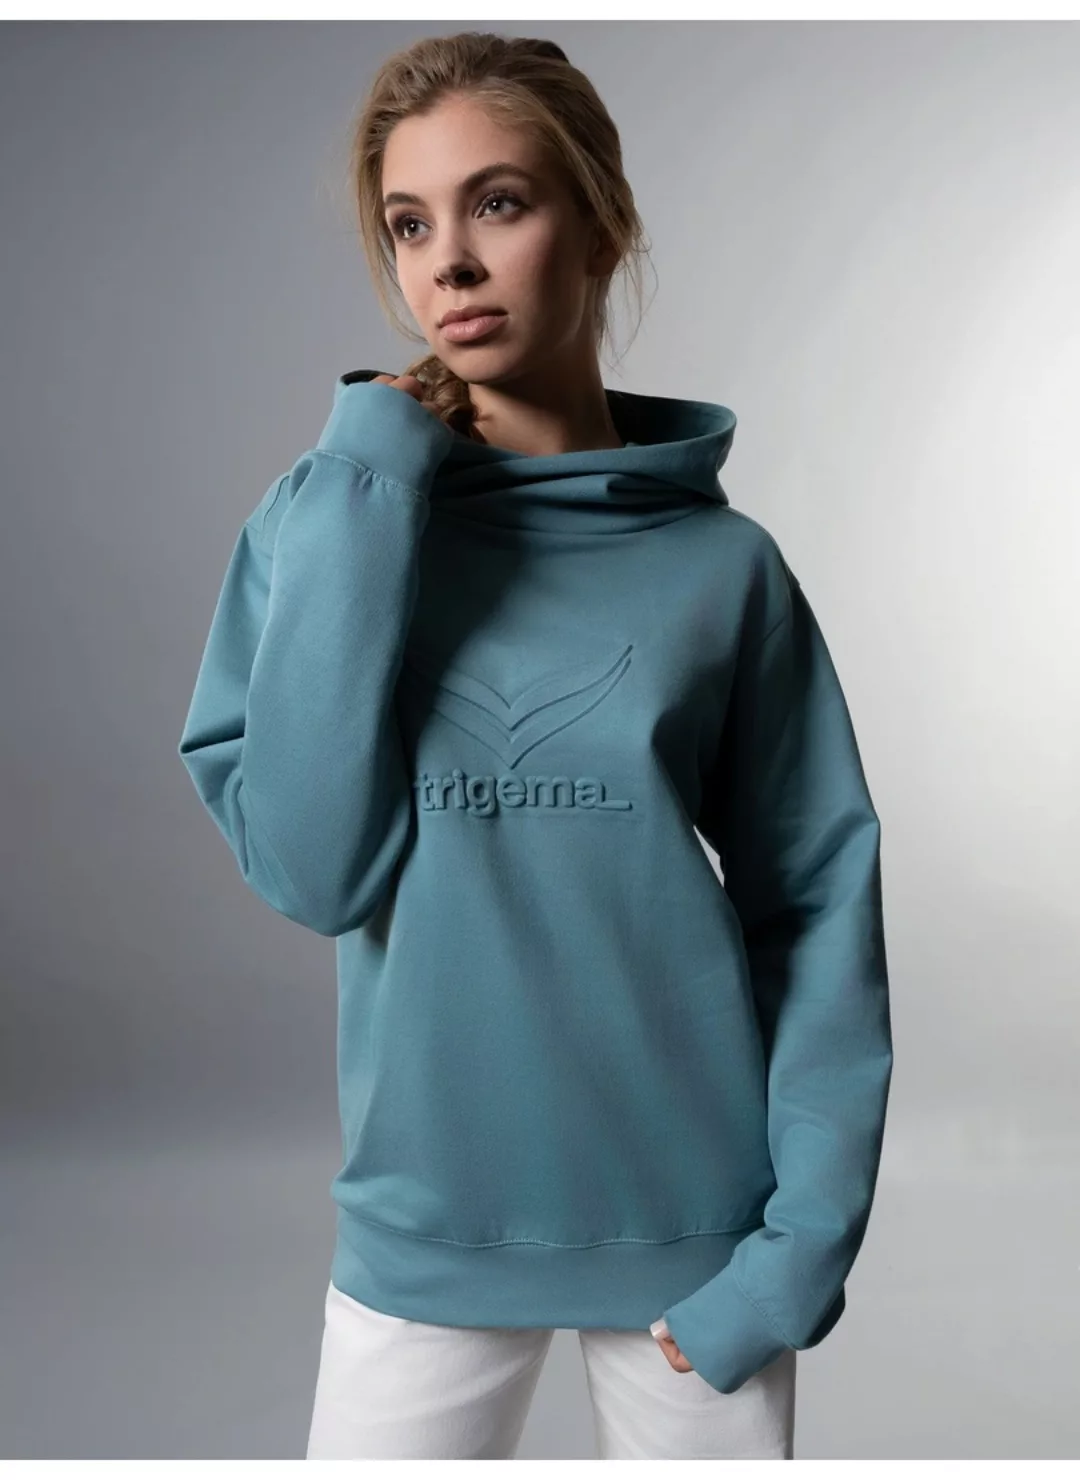 Trigema Kapuzensweatshirt "TRIGEMA Kapuzenpullover mit großem 3D-Motiv" günstig online kaufen